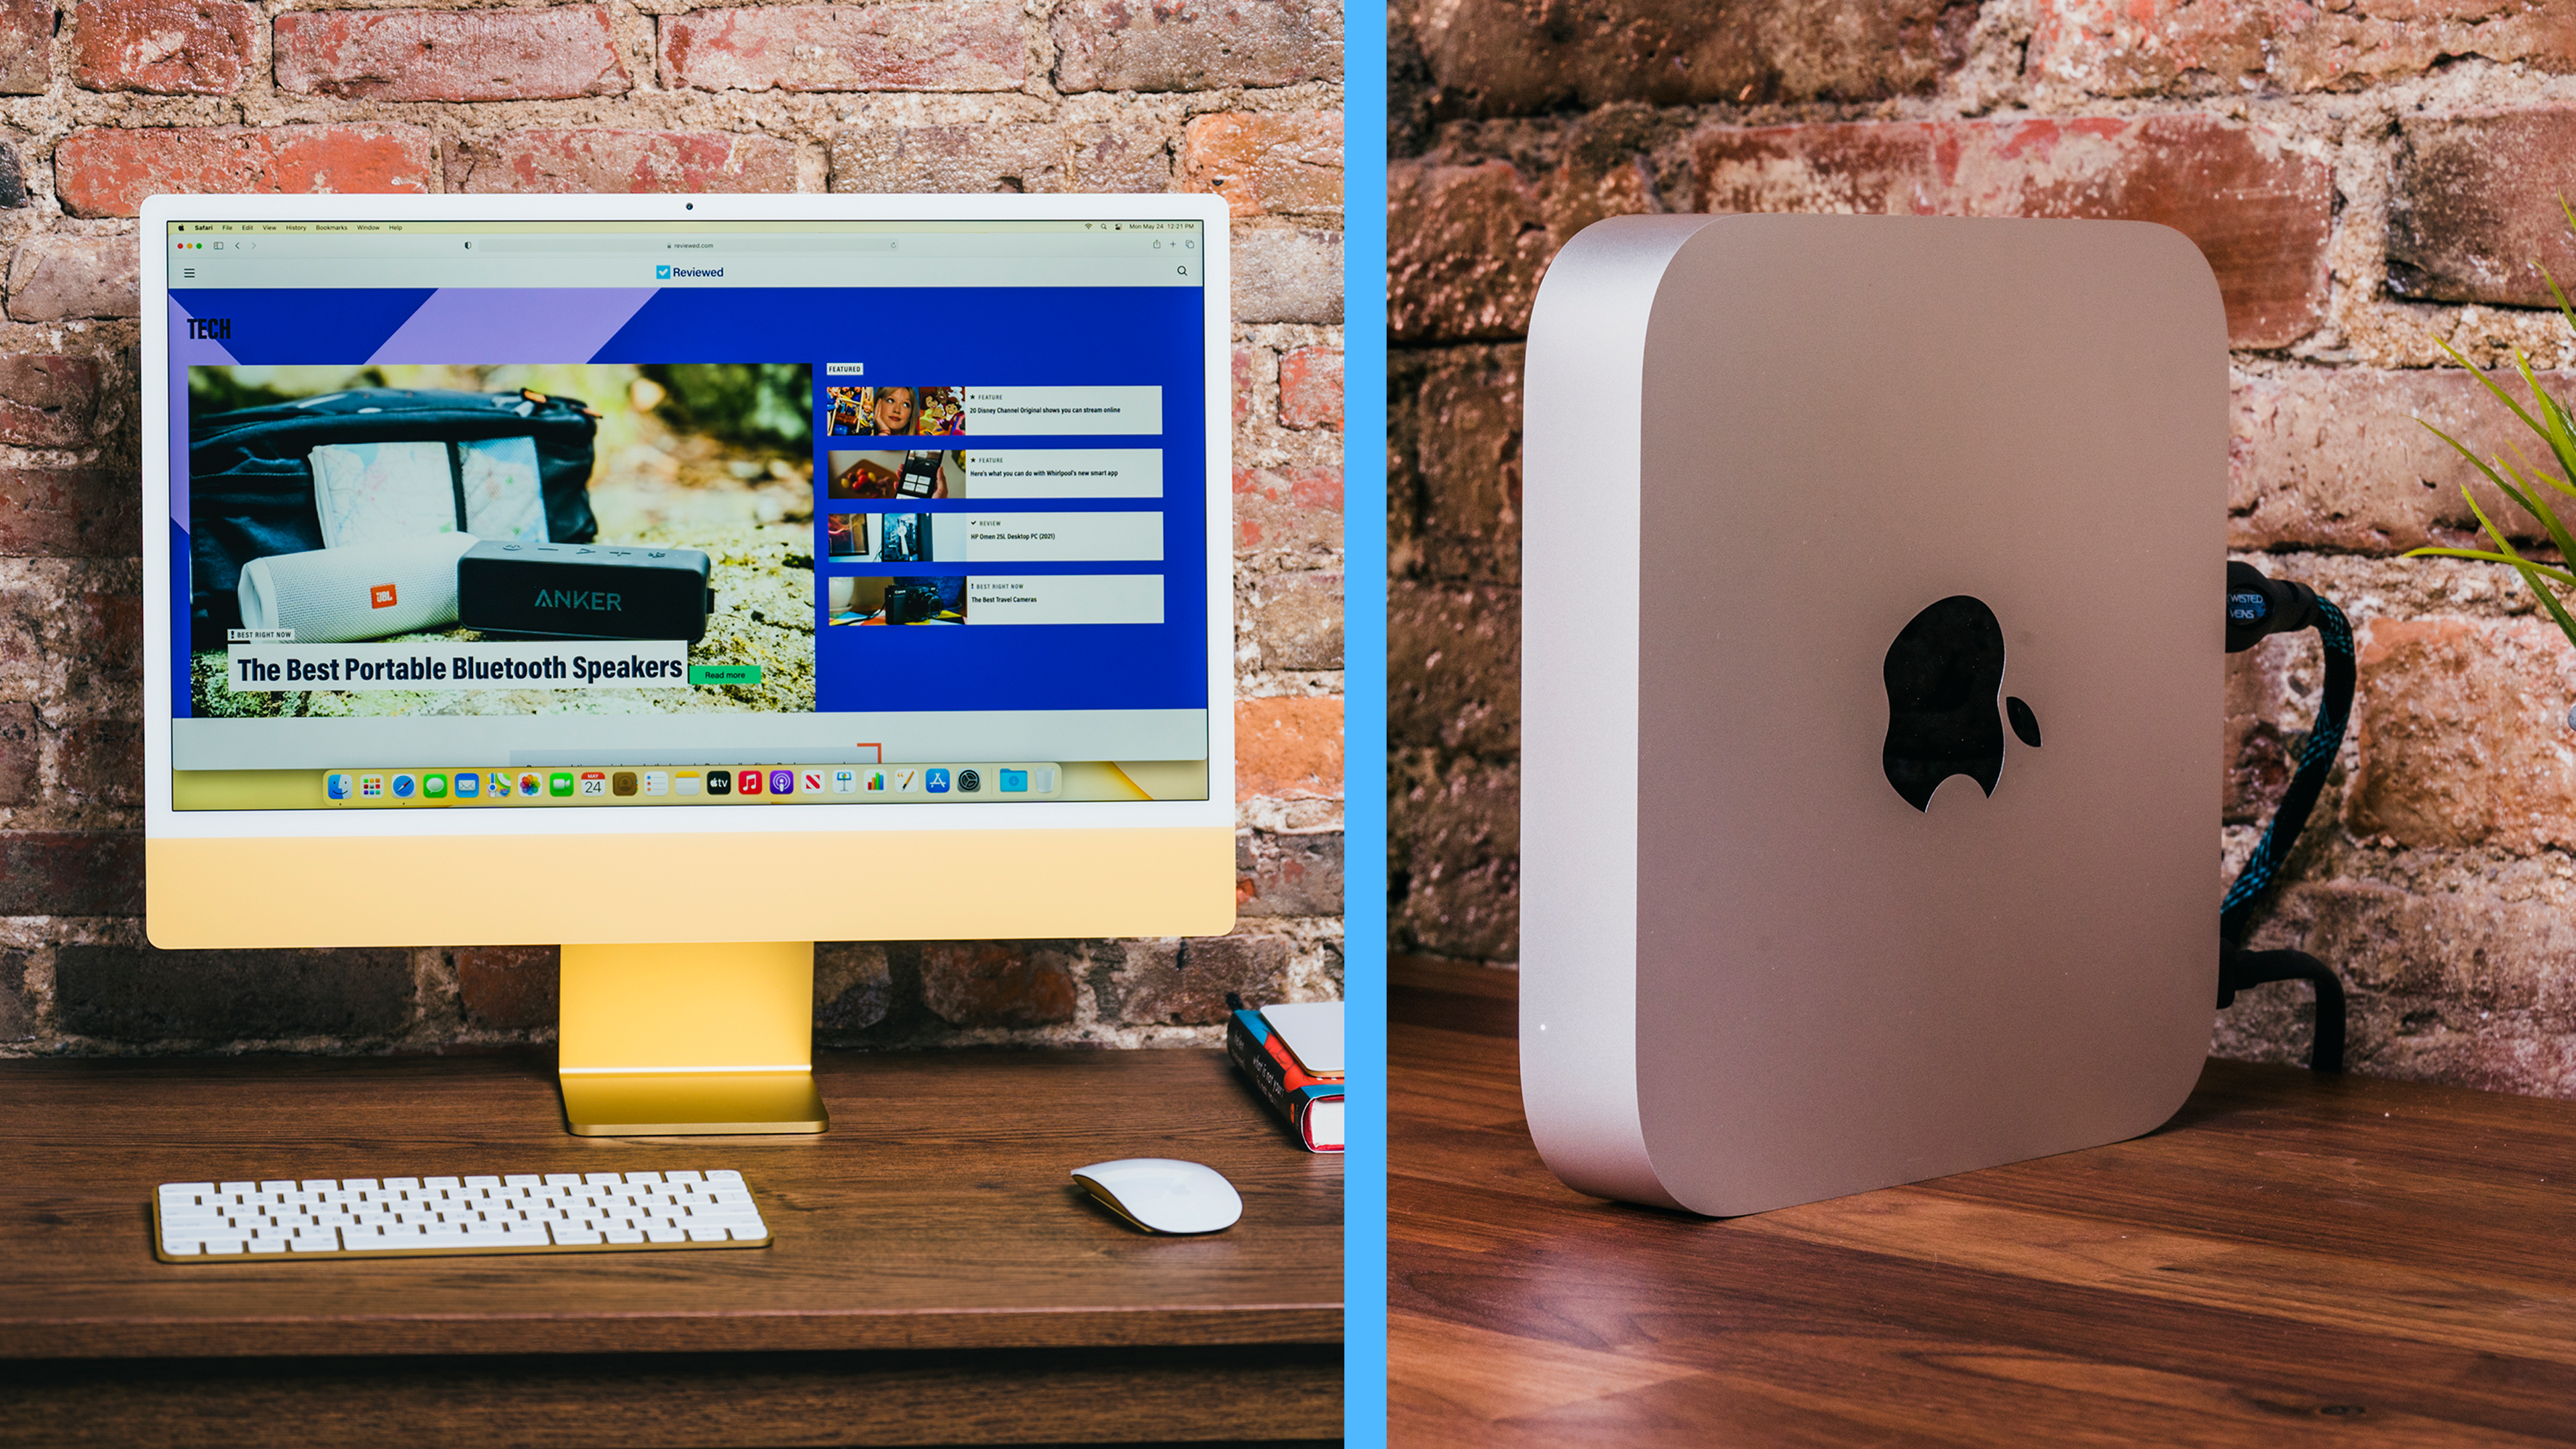 A sinistra: l'IMAC si siede su una scrivania, acceso. A destra: il Mac Mini posa su una scrivania